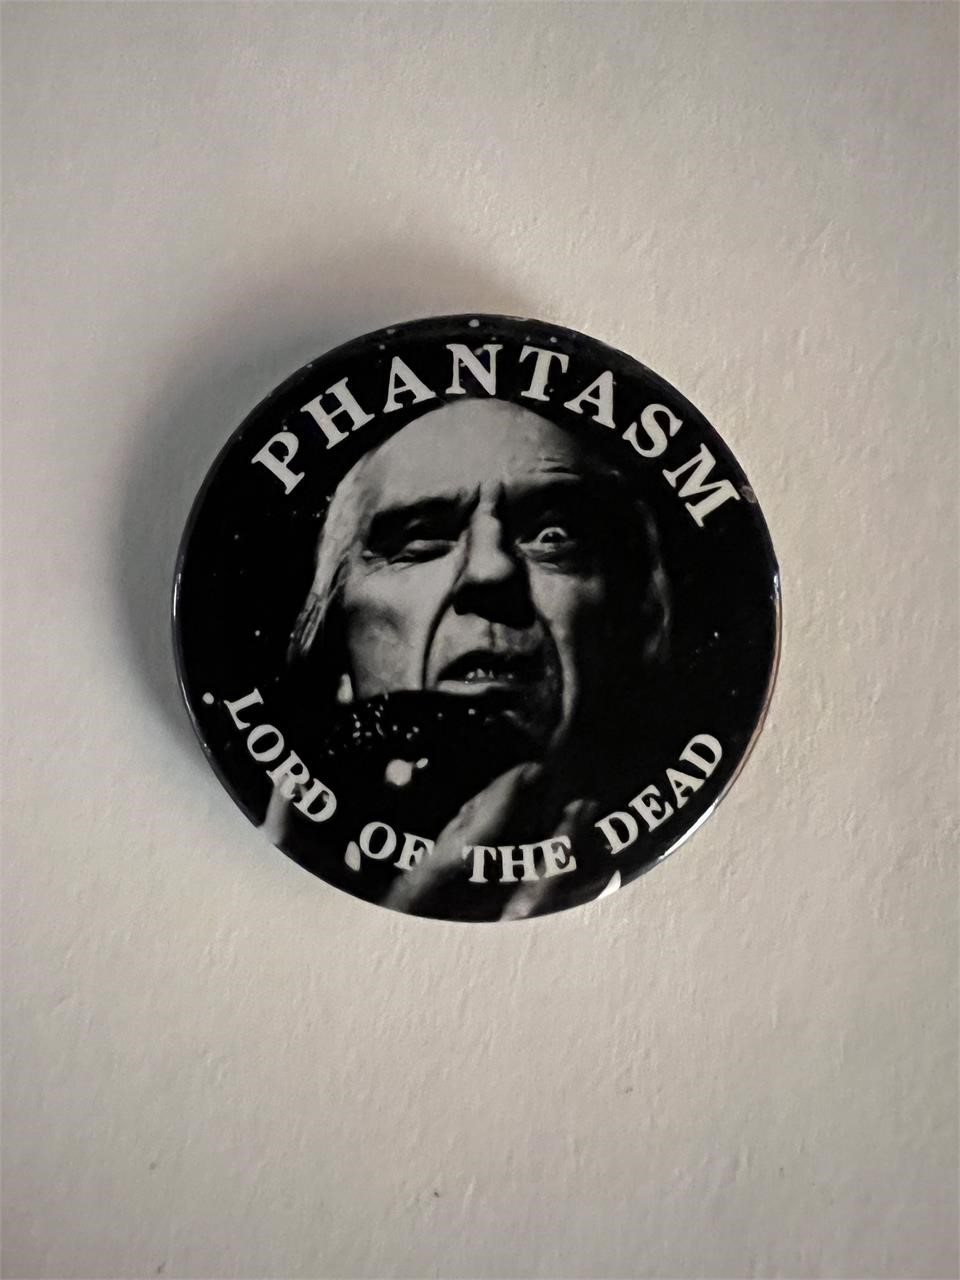 Phantasm movie pin